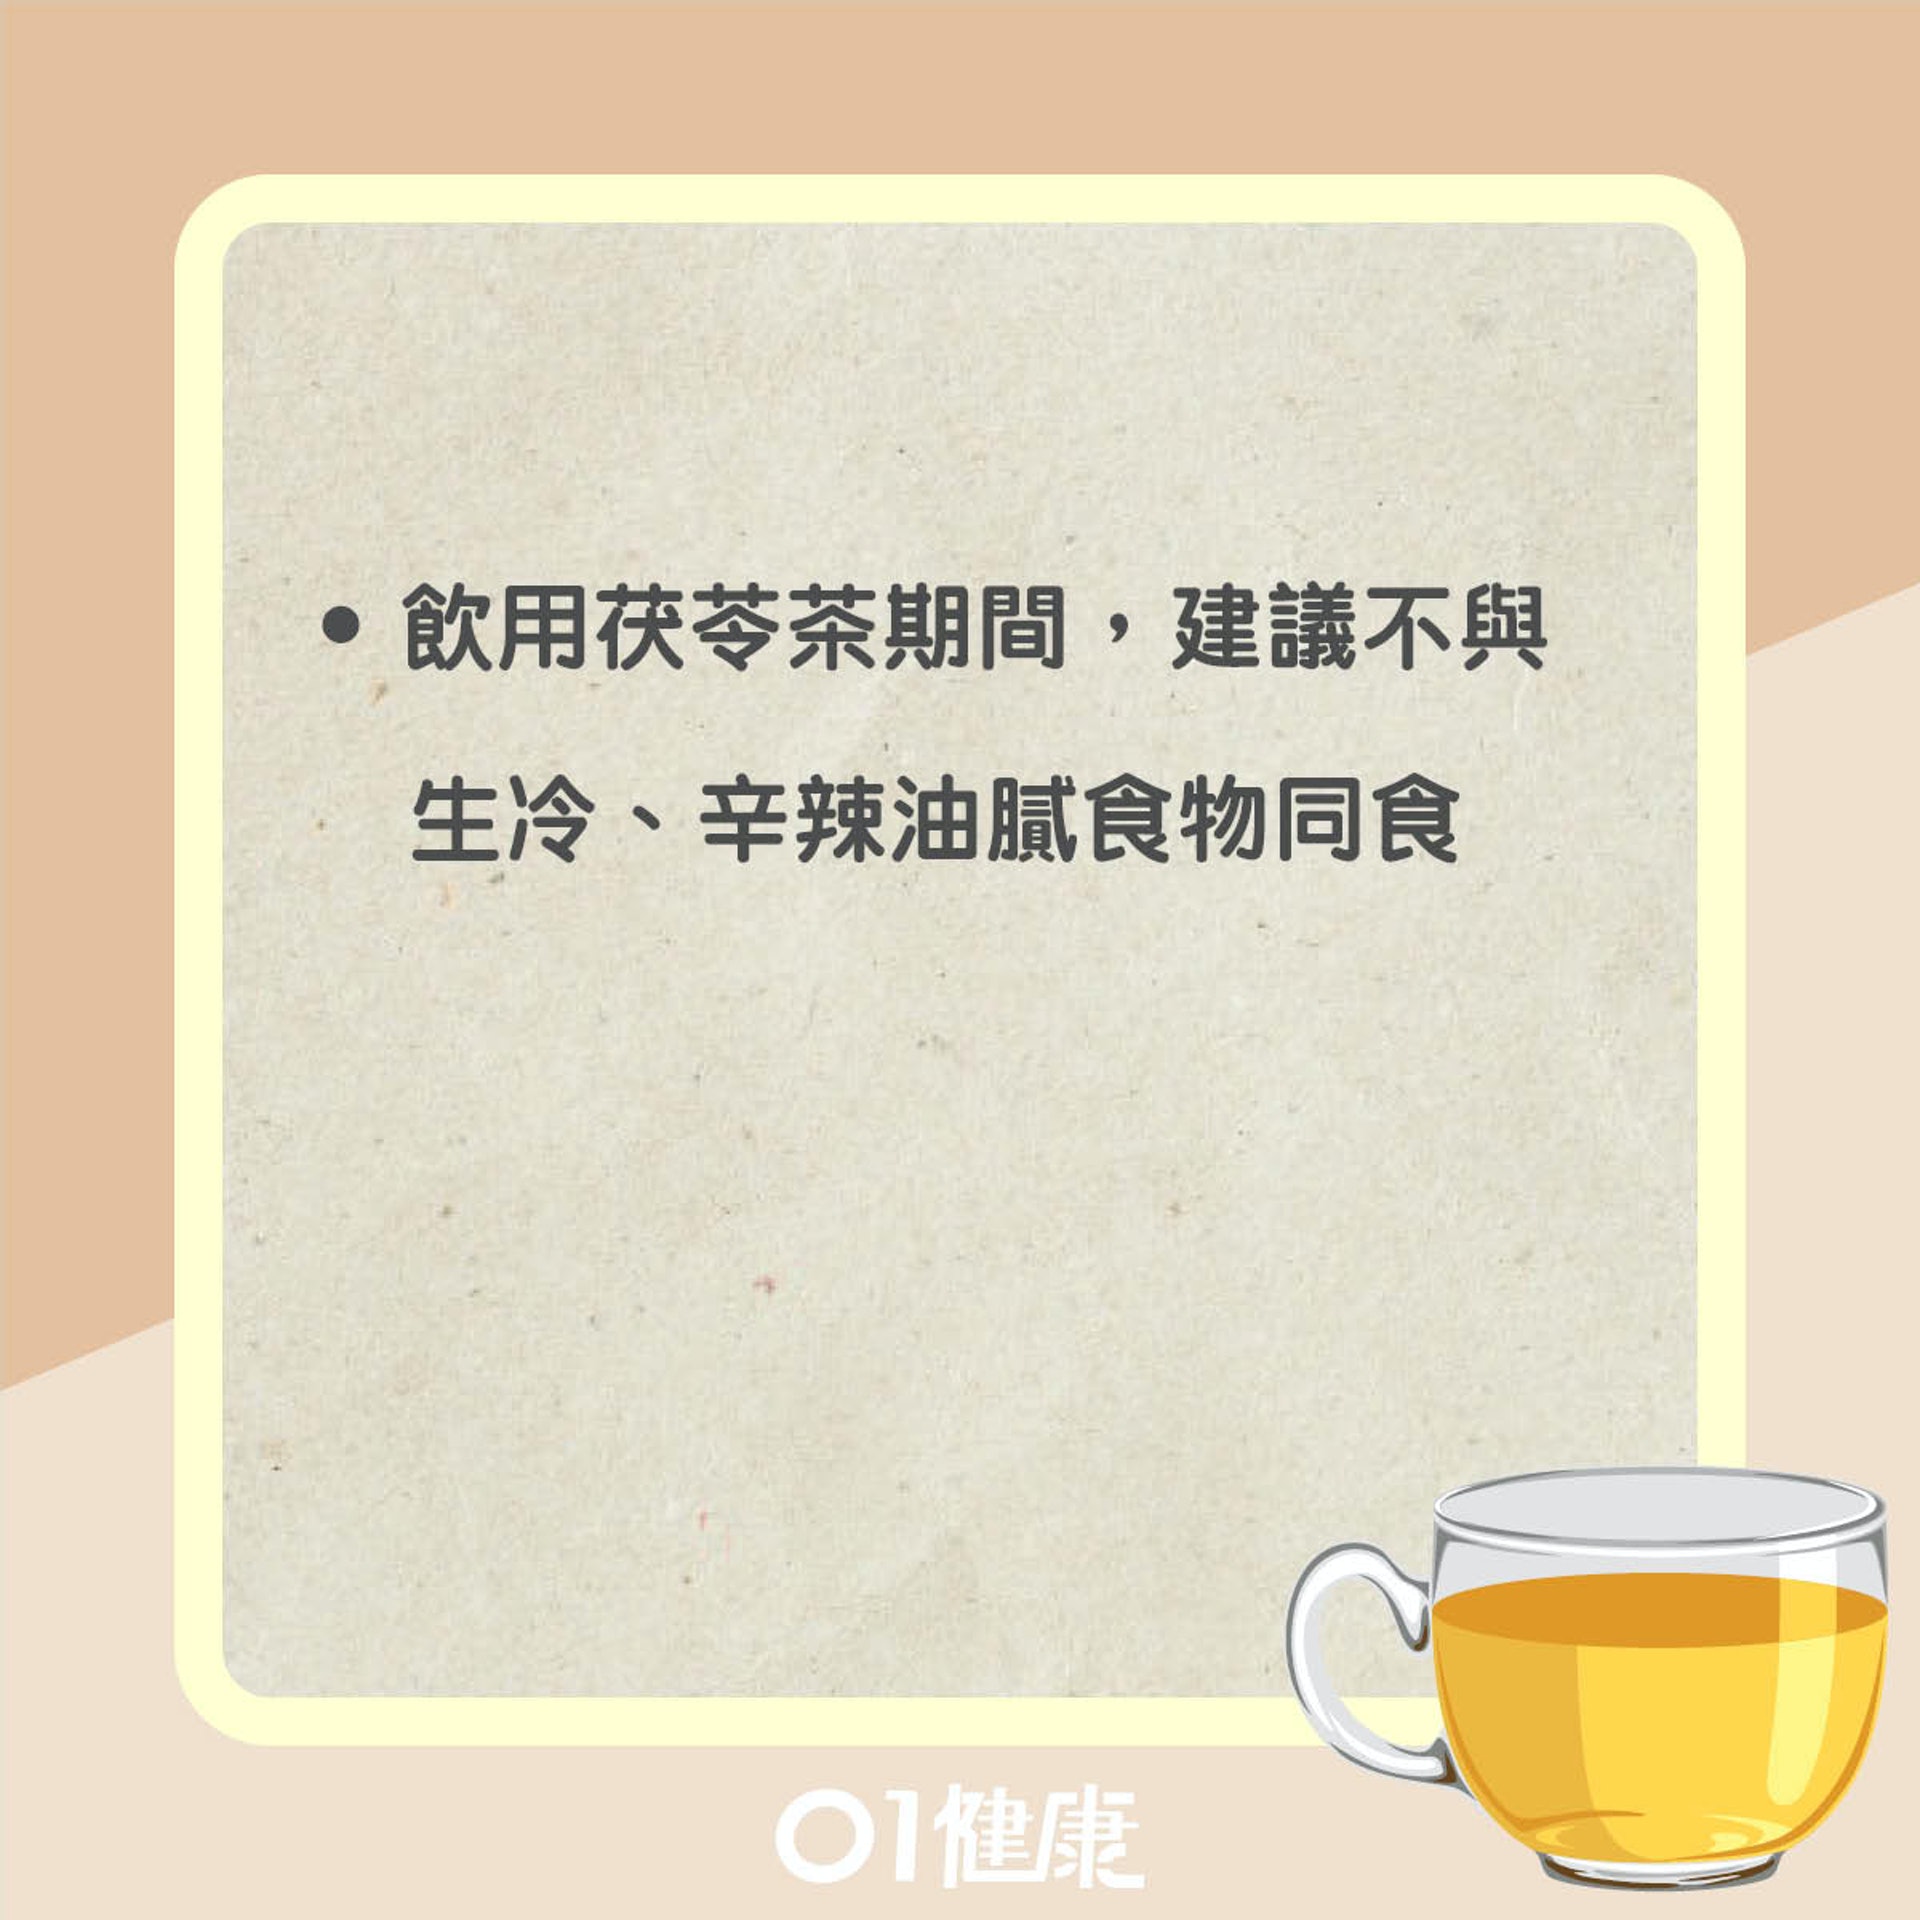 飲用茯苓茶注意事項（01製圖）